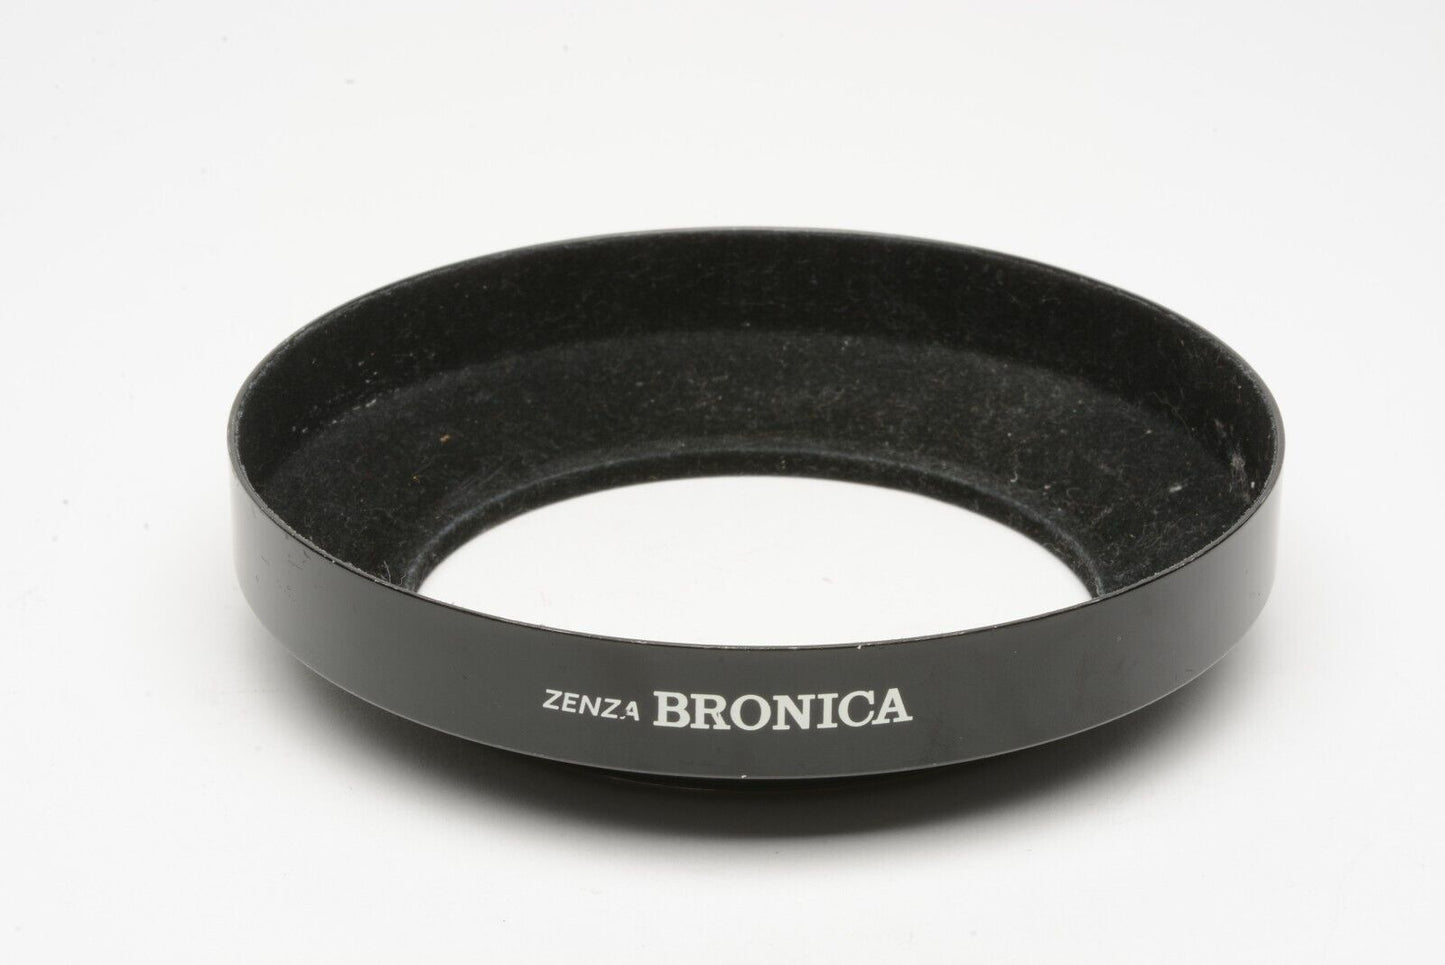 EXC++ GENUINE BRONICA METAL LENS HOOD FOR PS 50 ZENZANON 50mm F3.5